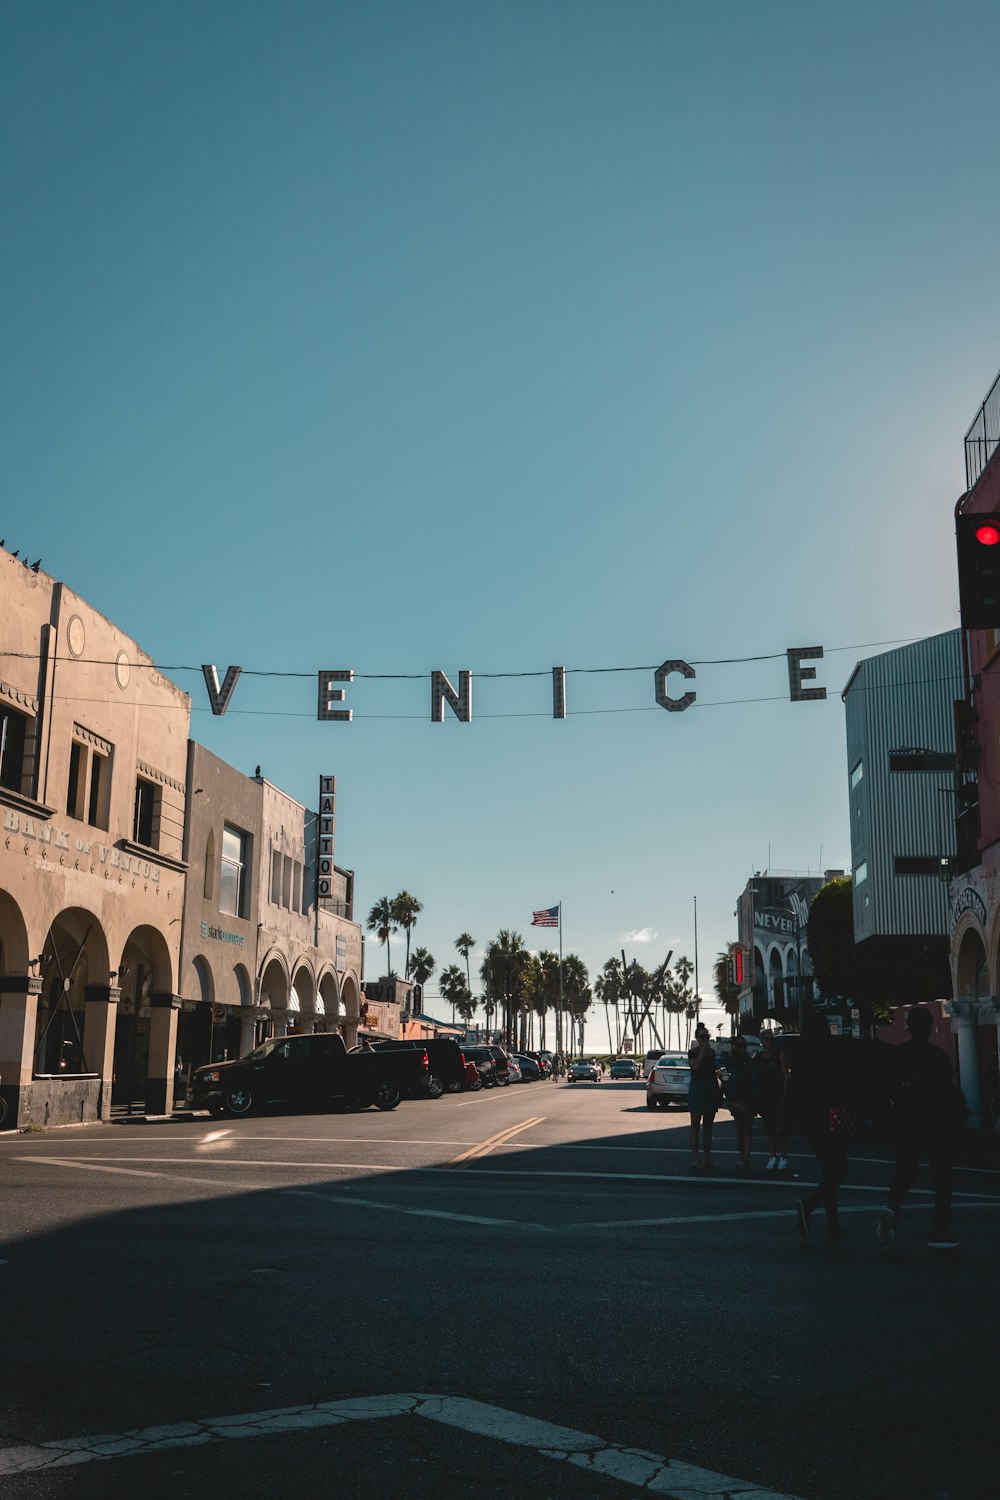 Venice signage